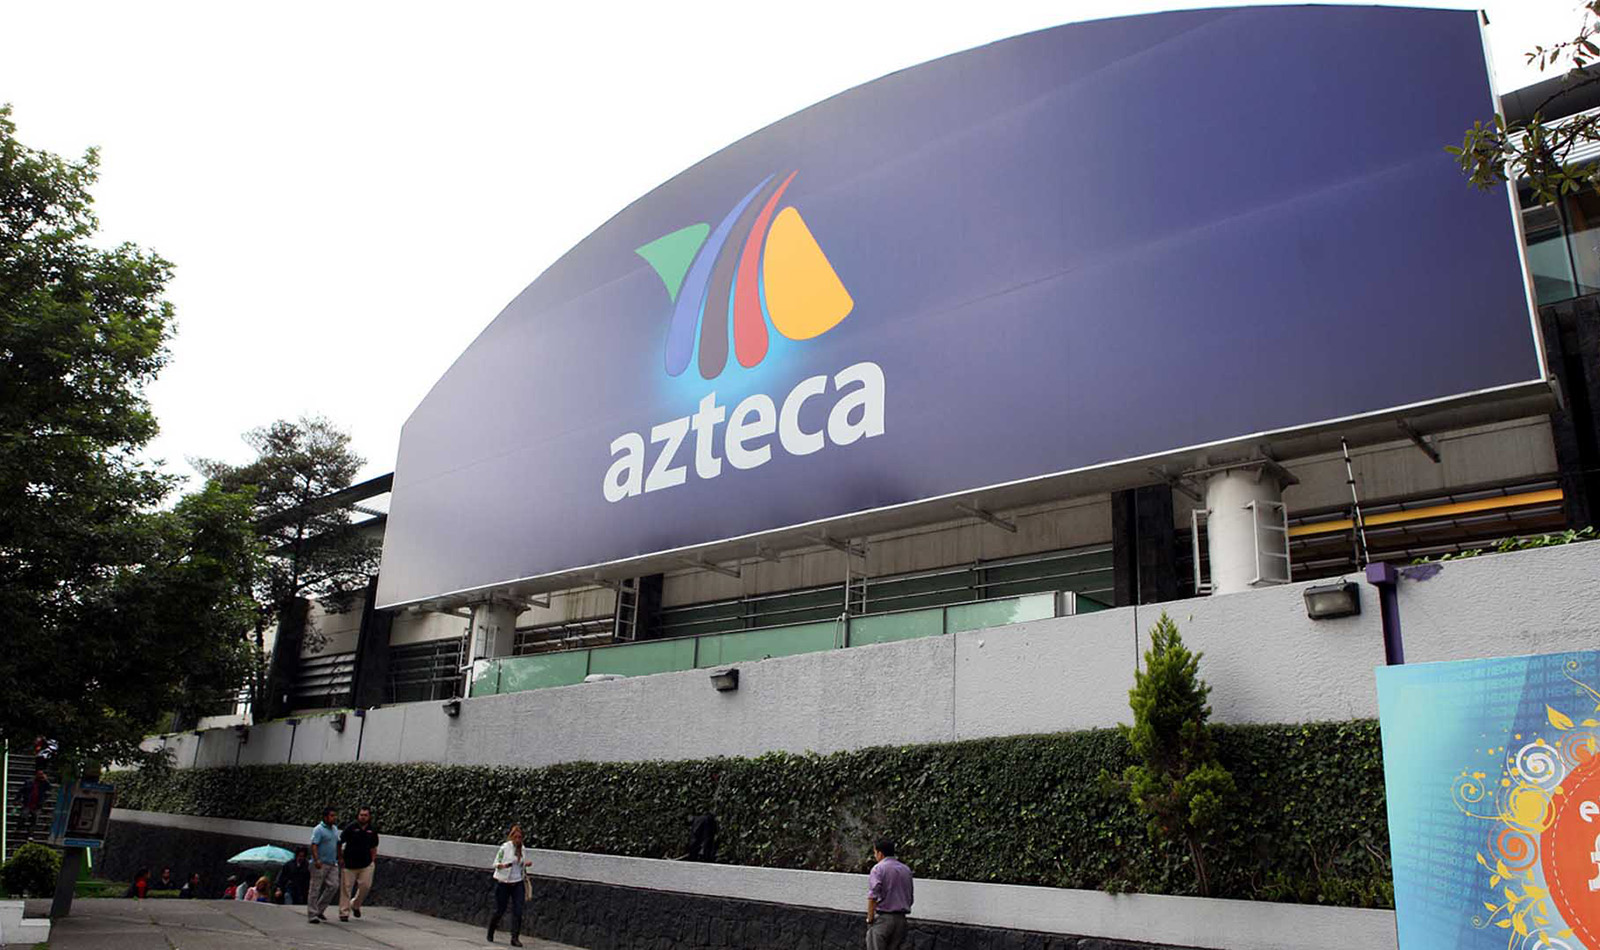  TV Azteca pone en marcha dos nuevos canales